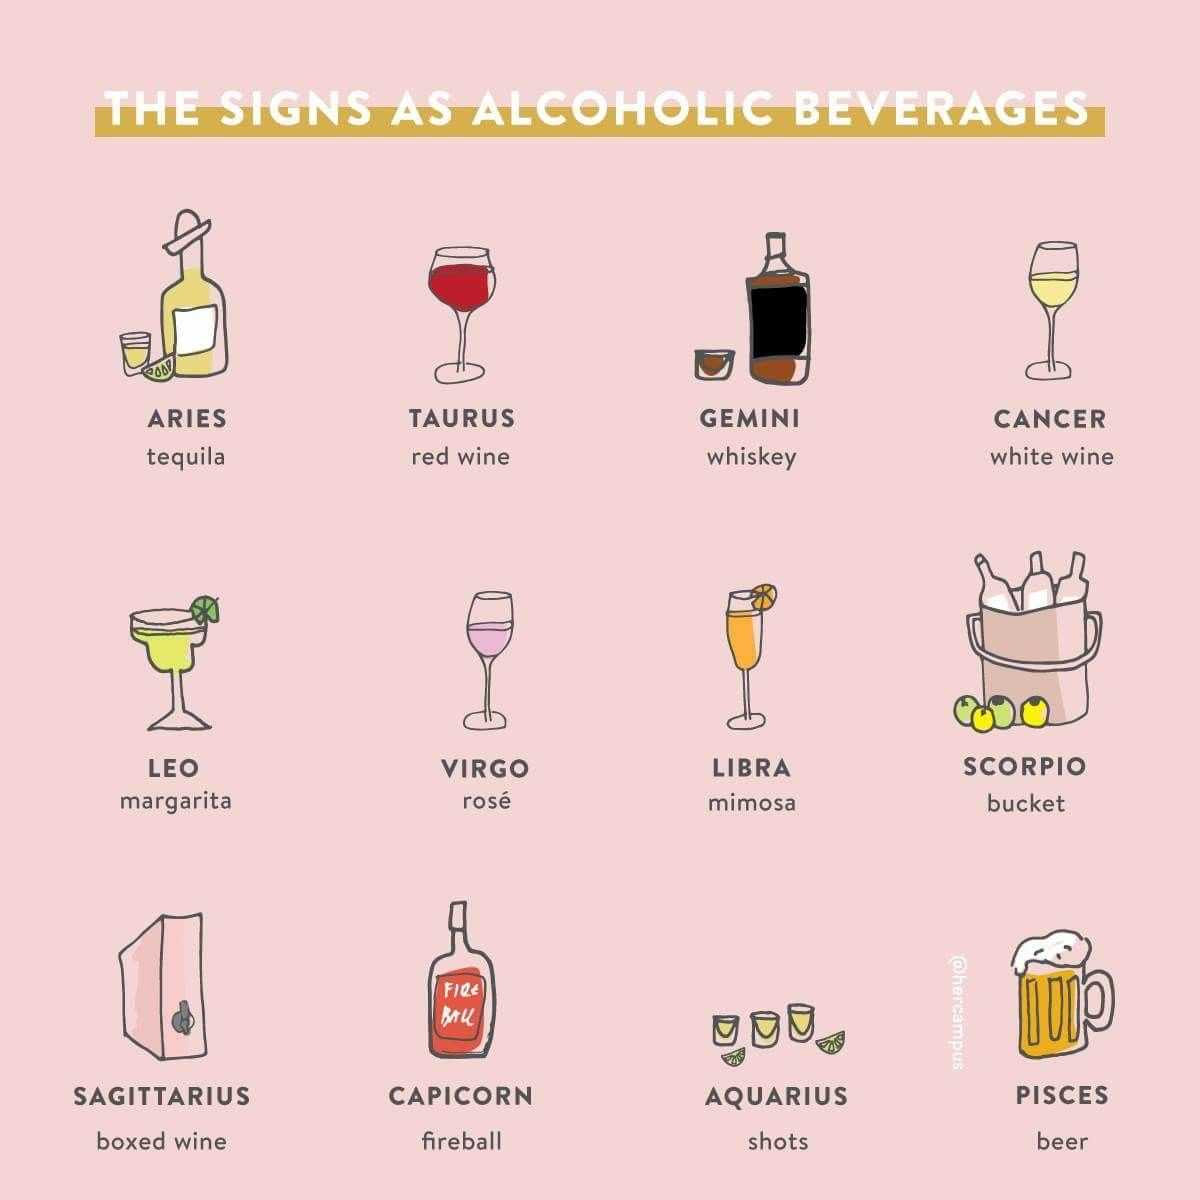 15 самых популярных алкогольных коктейлей